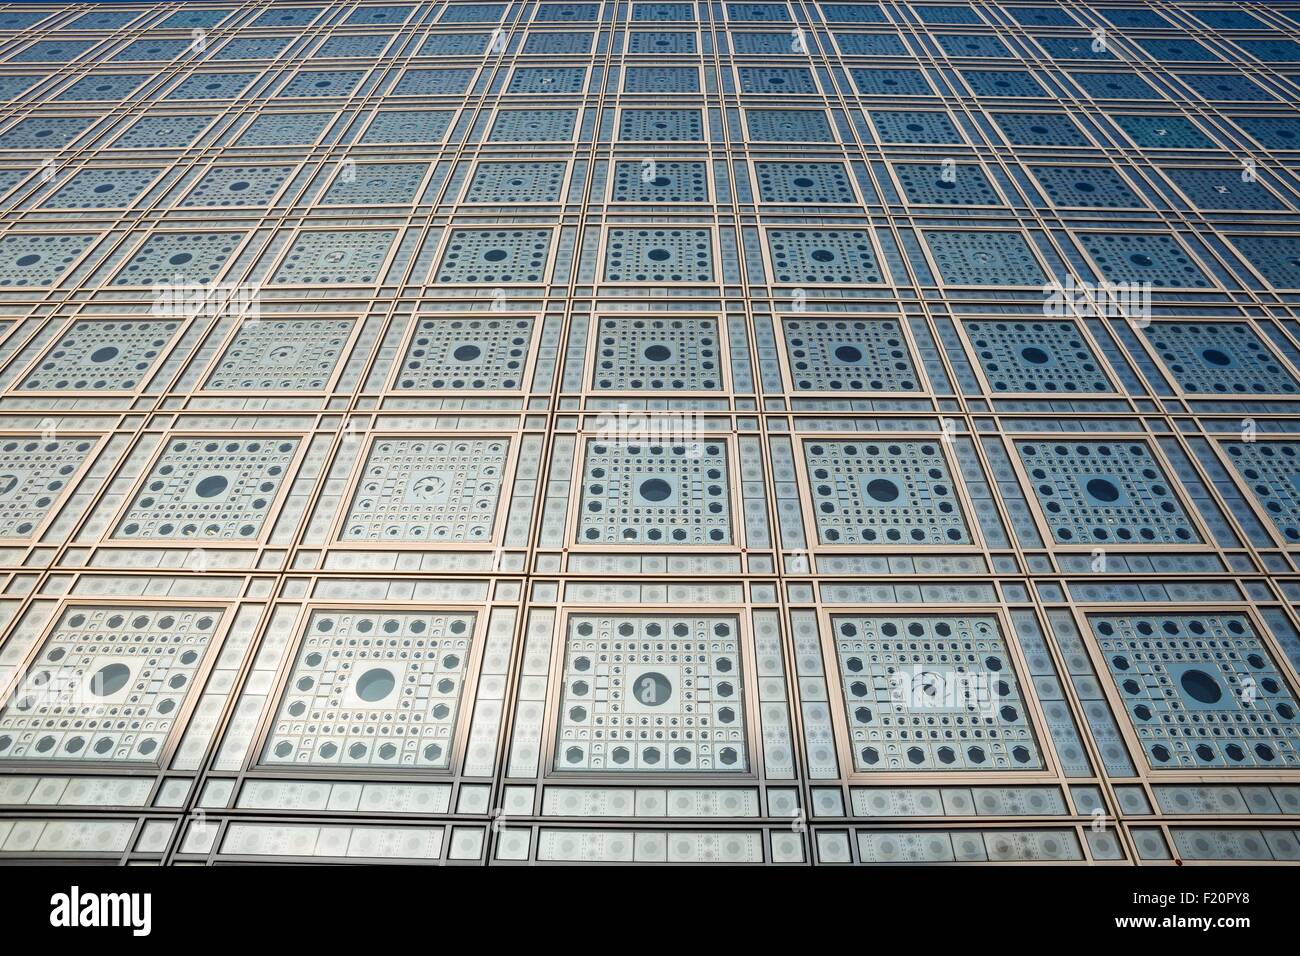 France, Paris, l'Institut du Monde Arabe conçu par les architectes Jean Nouvel et Architecture-Studio 1, détail des moucharabiehs faτade sud Banque D'Images